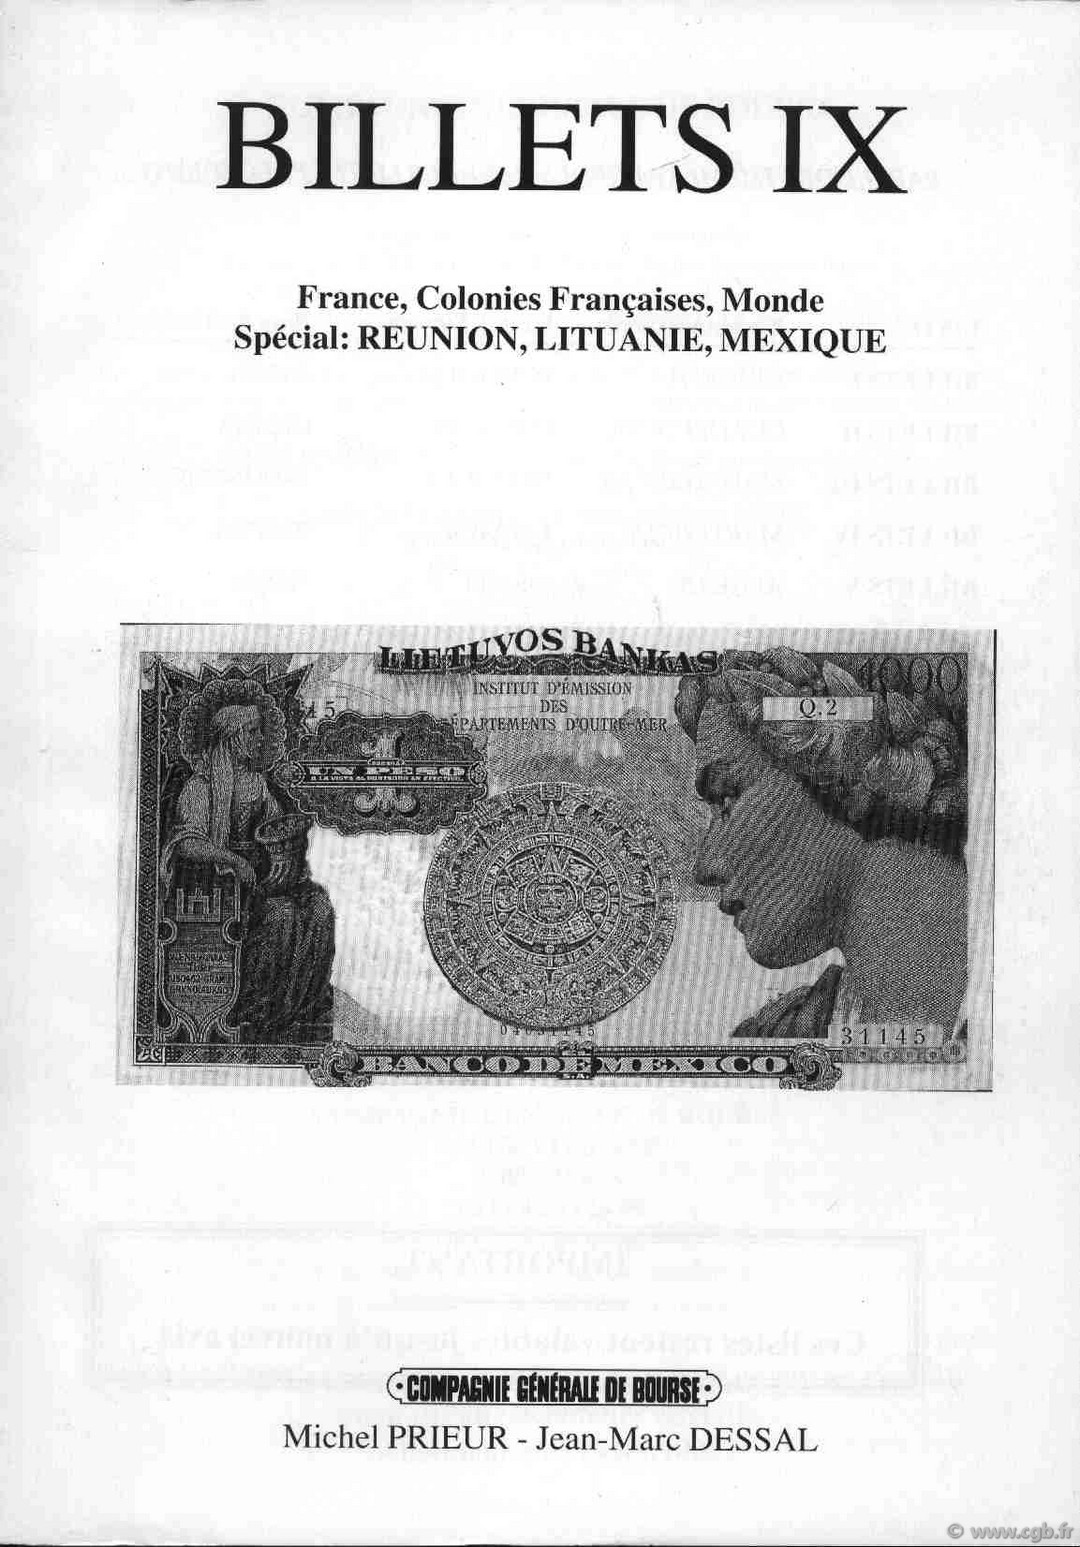 Billets 9 - France - Réunion - Lithuanie - Mexique PRIEUR Michel, DESSAL Jean-Marc